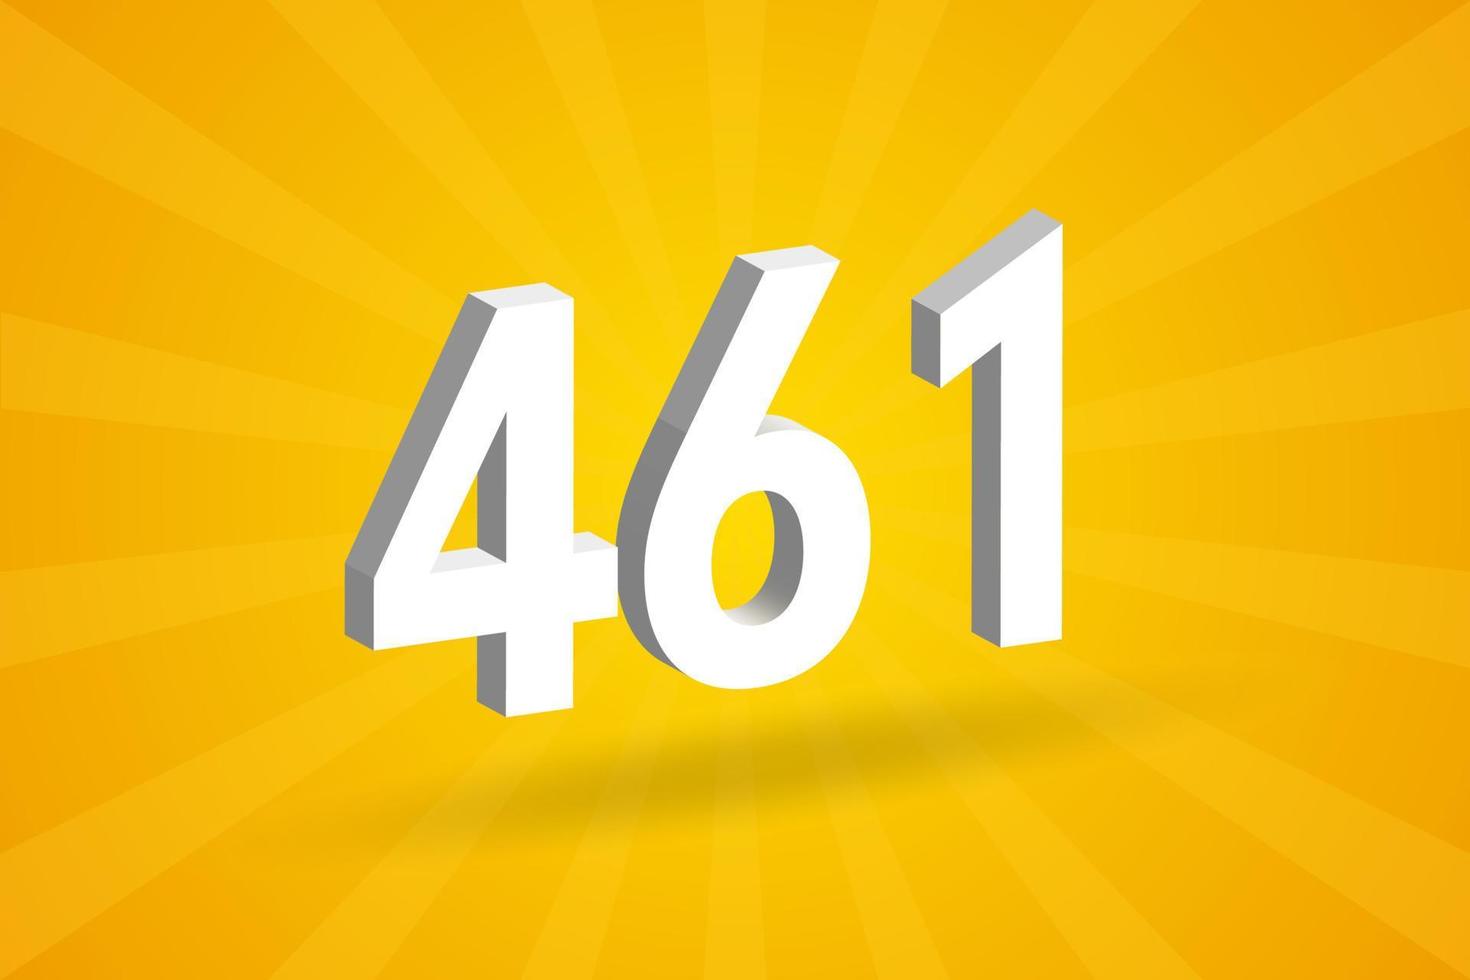 3d 461 aantal doopvont alfabet. wit 3d aantal 461 met geel achtergrond vector